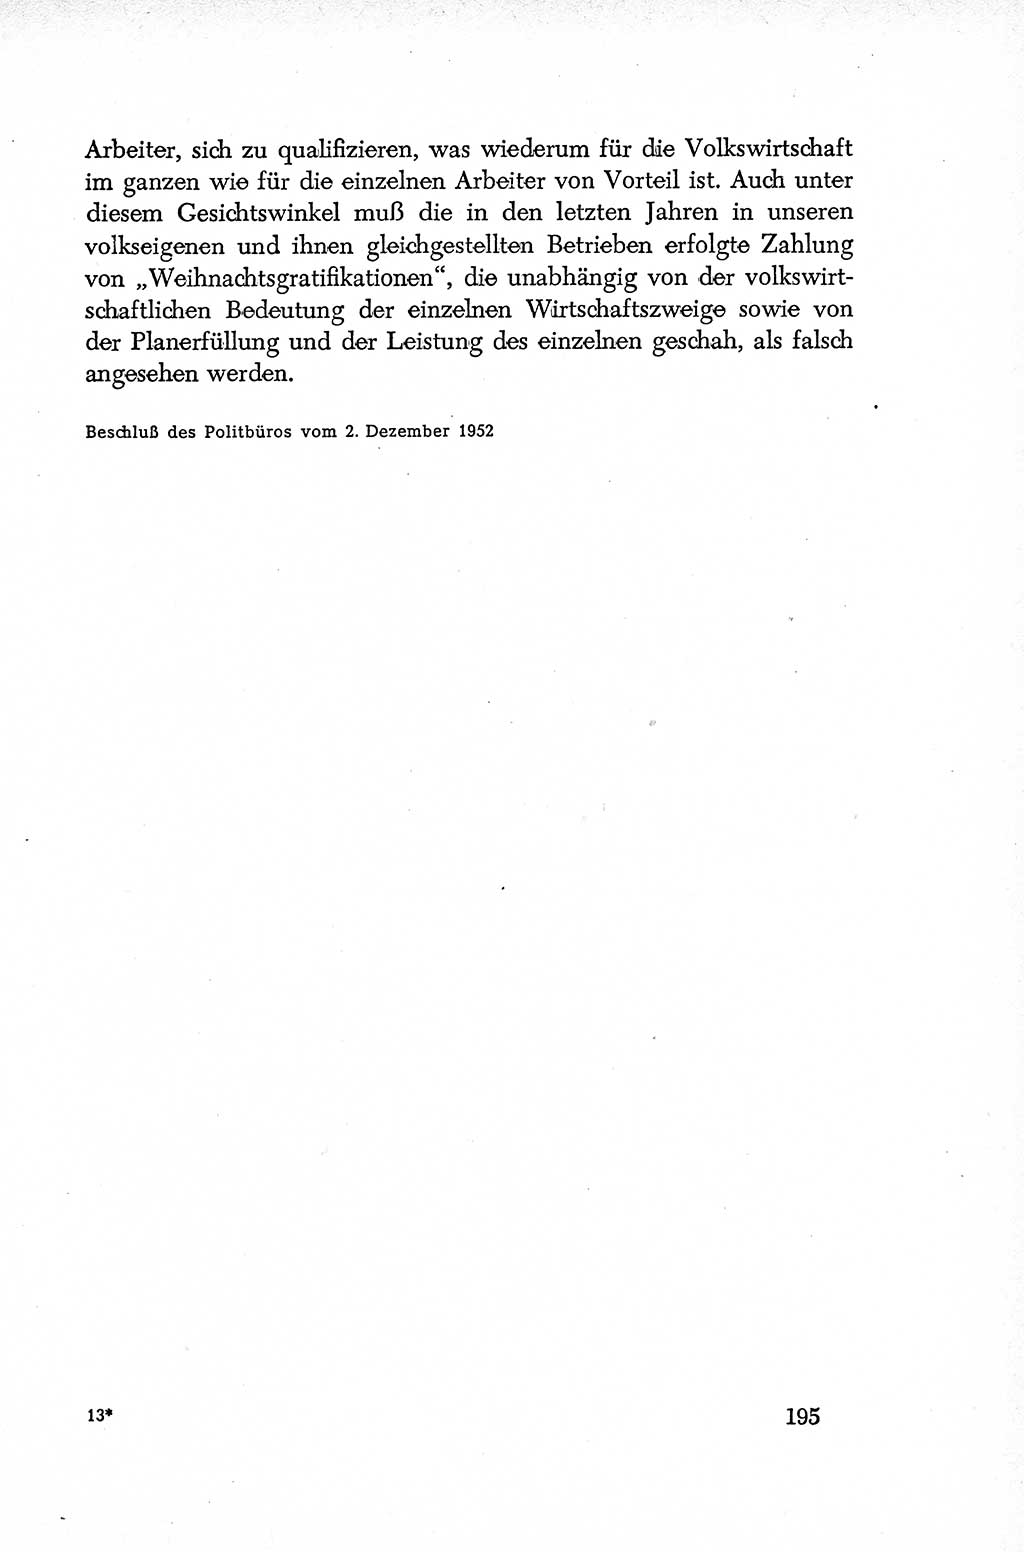 Dokumente der Sozialistischen Einheitspartei Deutschlands (SED) [Deutsche Demokratische Republik (DDR)] 1952-1953, Seite 195 (Dok. SED DDR 1952-1953, S. 195)